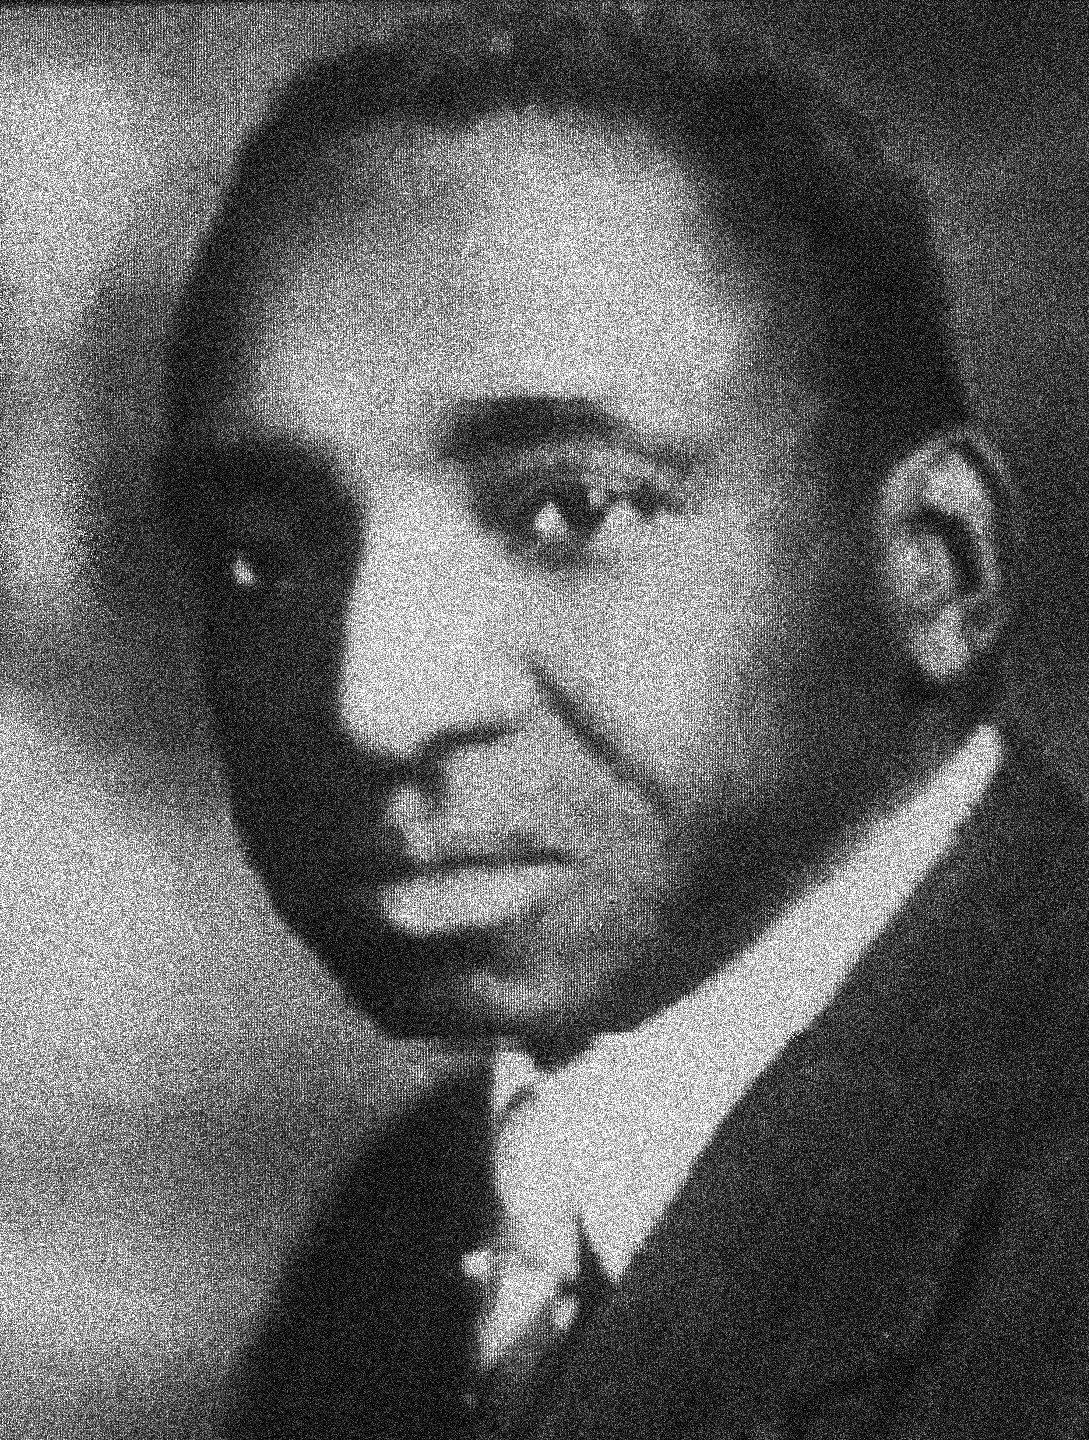 (1887 - 1950)